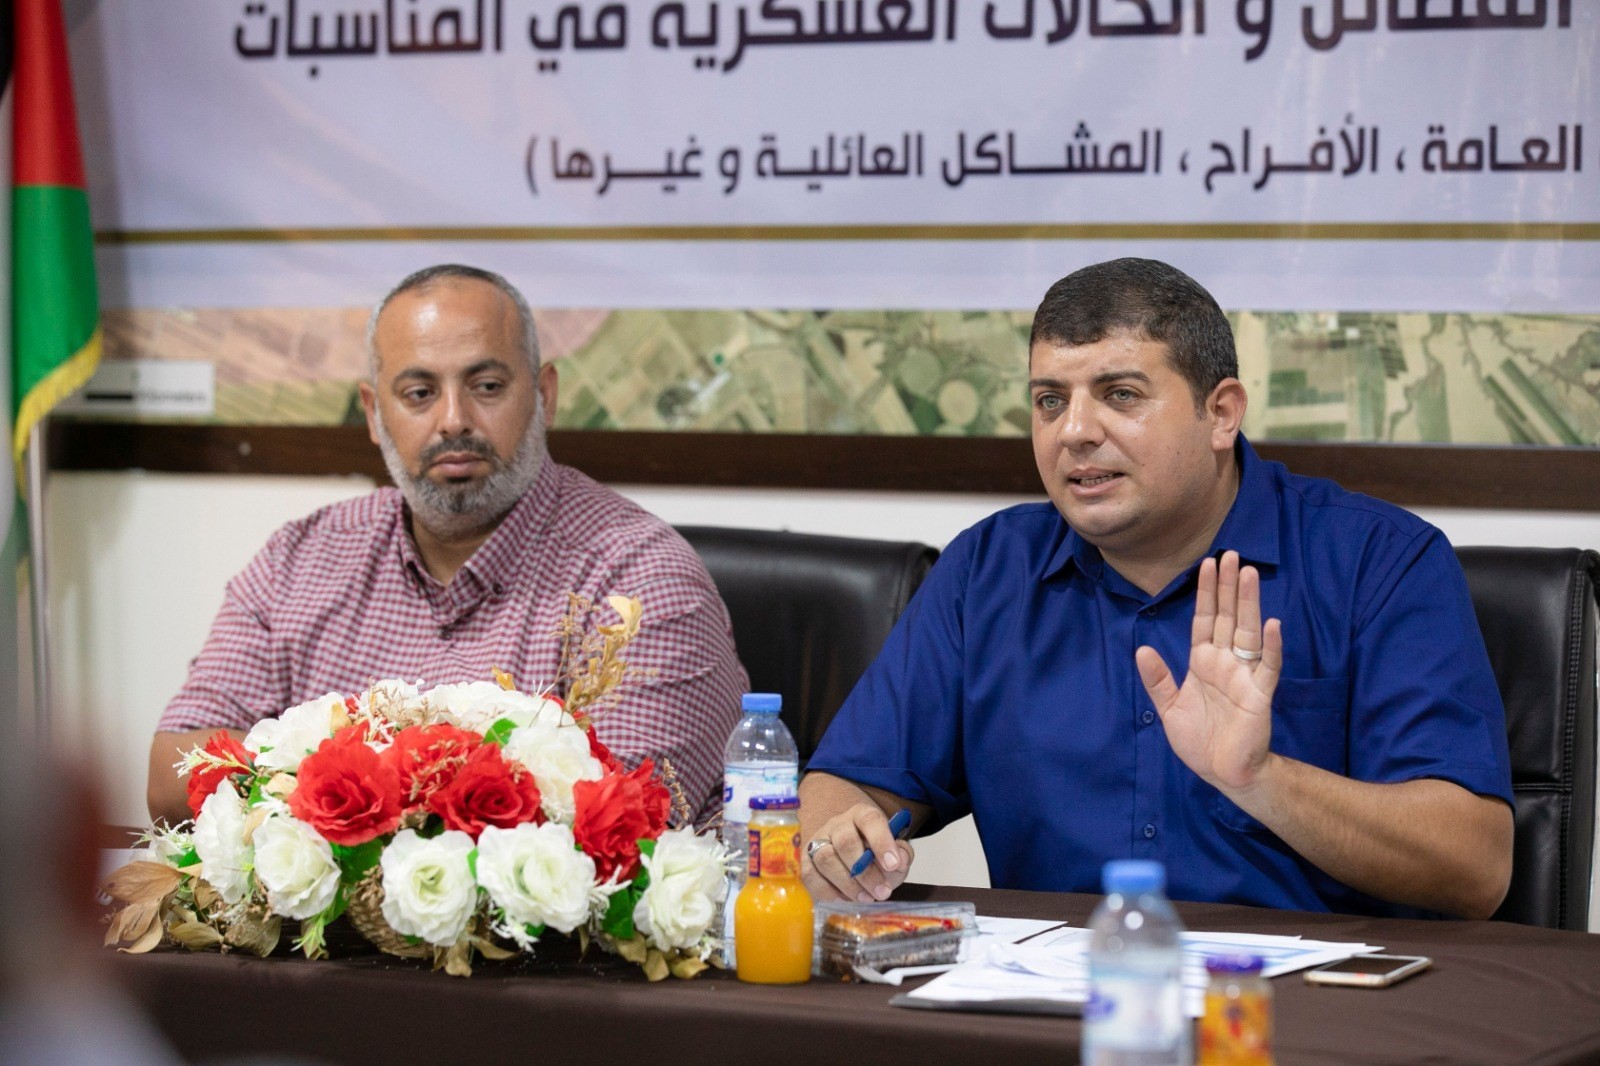 لقاء عقدته وحدة التنسيق الفصائلي بوزارة الداخلية مع منسقي الفصائل والحالات العسكرية بقطاع غزة 7.jpeg